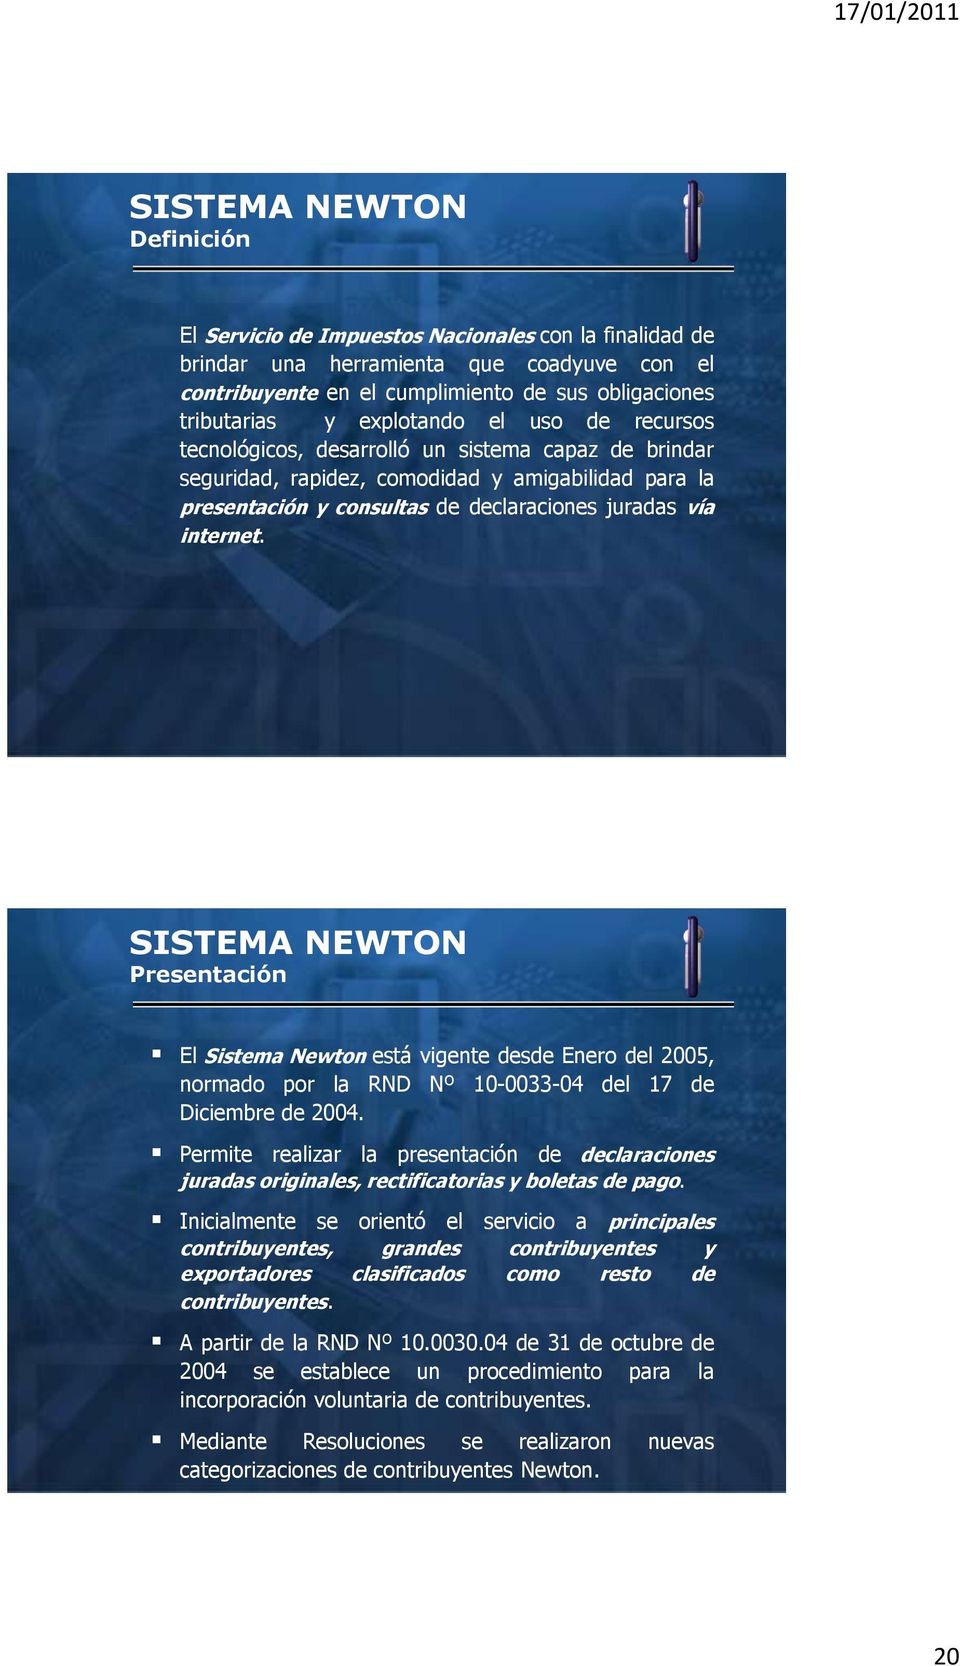 Presentación El Sistema Newton está vigente desde Enero del 2005, normado por la RND Nº 10-0033-04 del 17 de Diciembre de 2004.